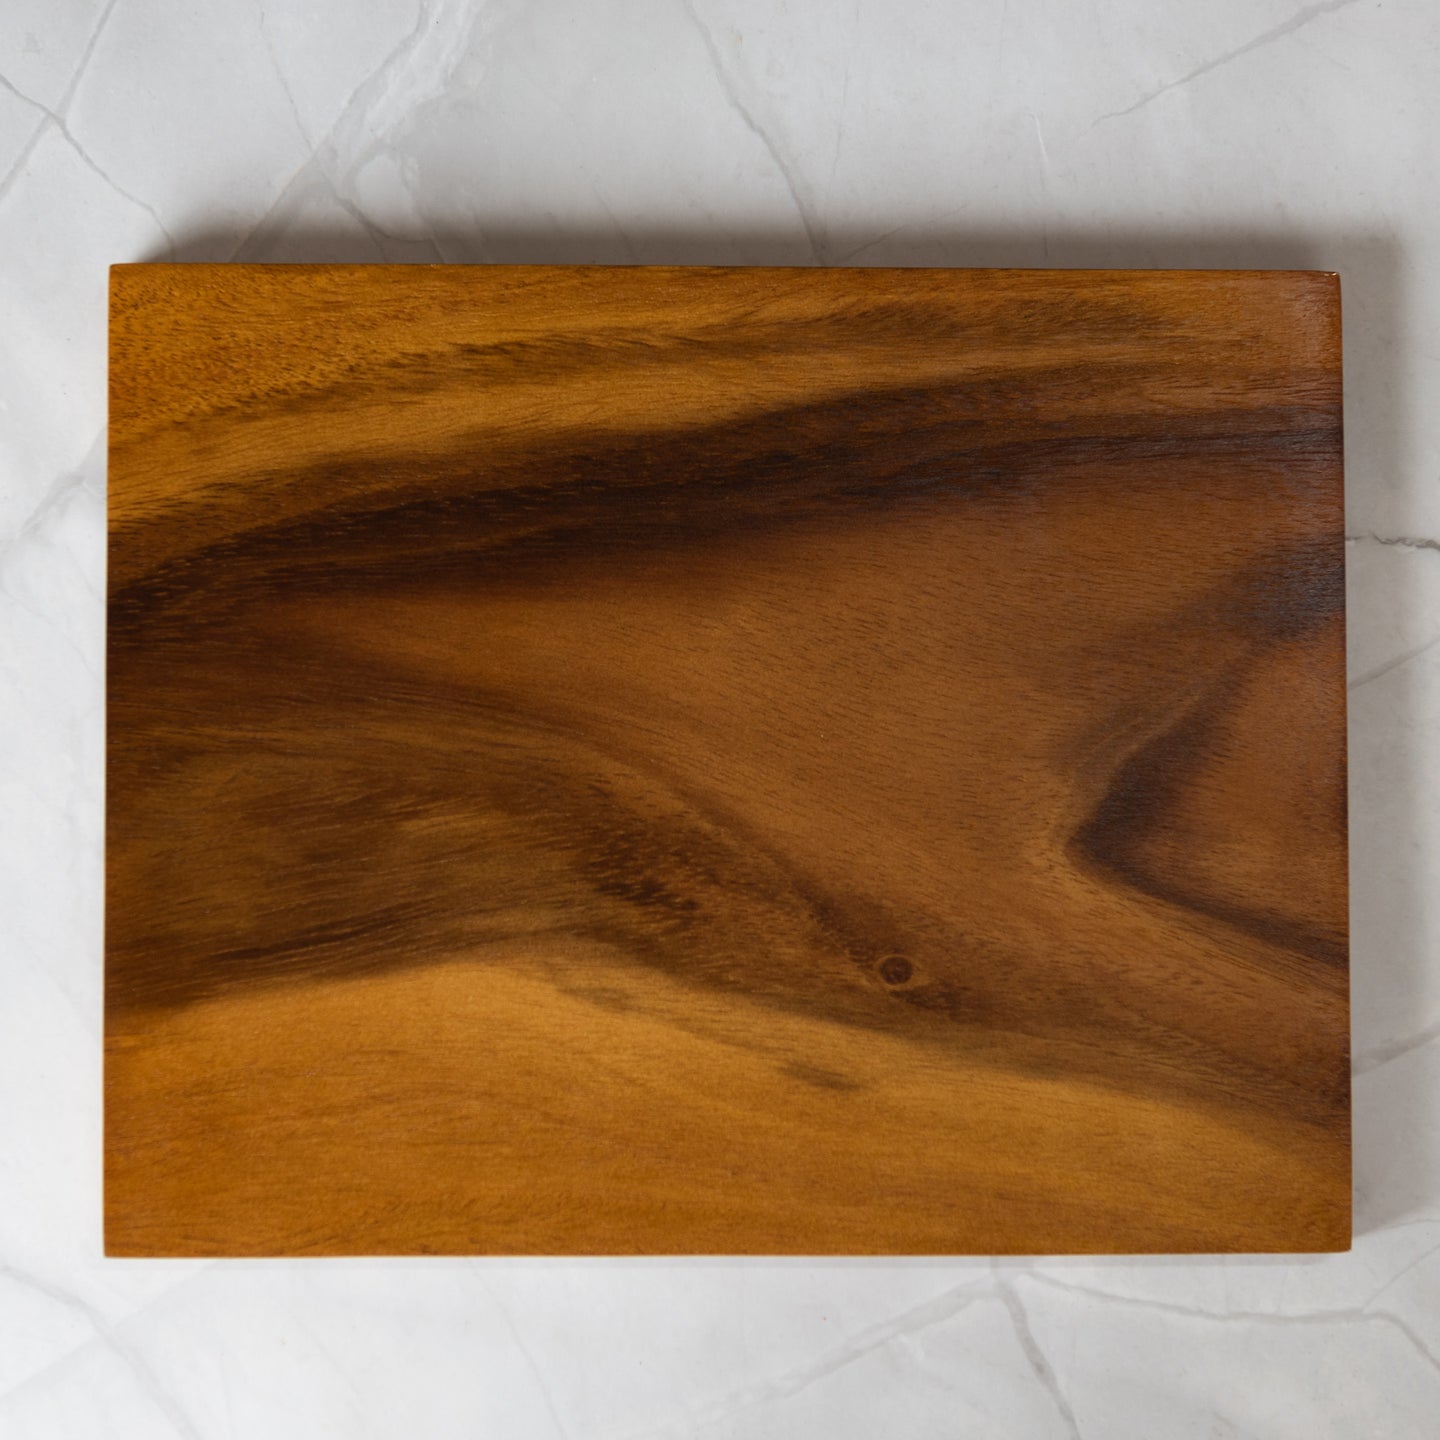 Wooden Cutting Board 20x25cm